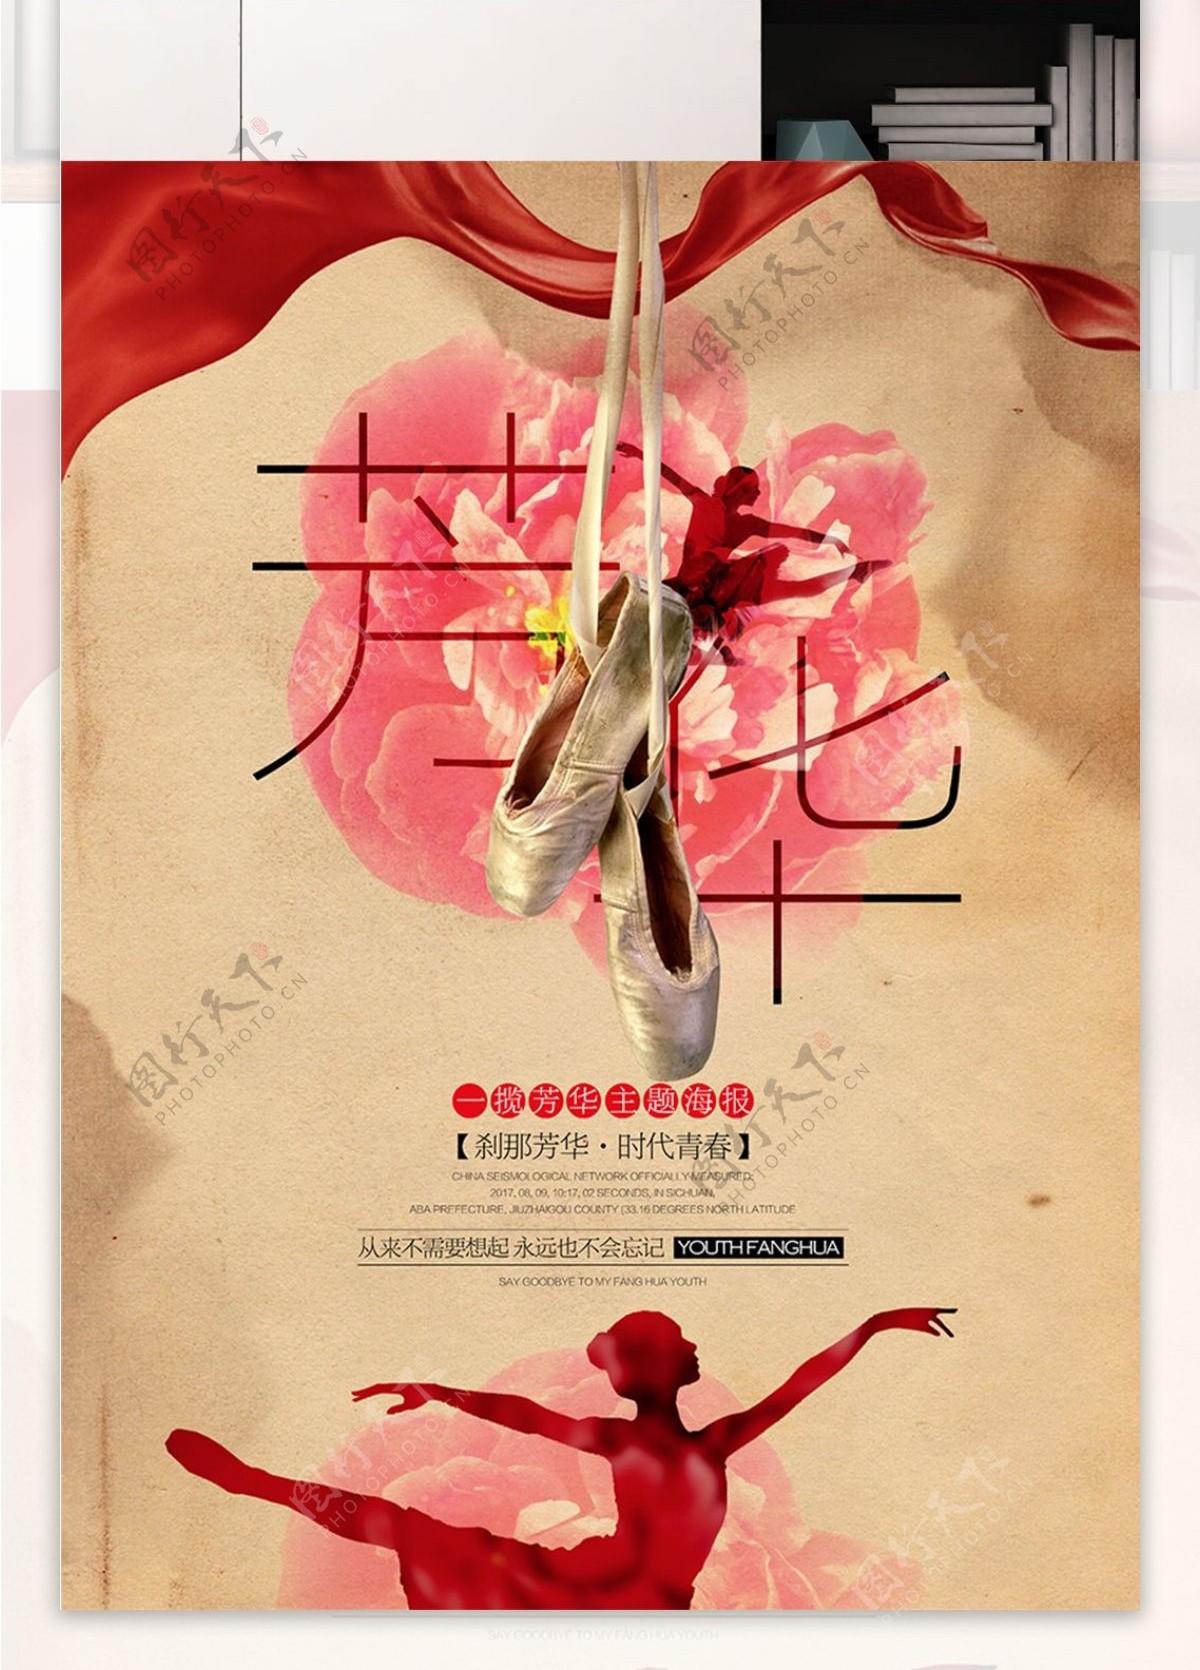 唯美复古风格芳华青春芭蕾电影宣传海报